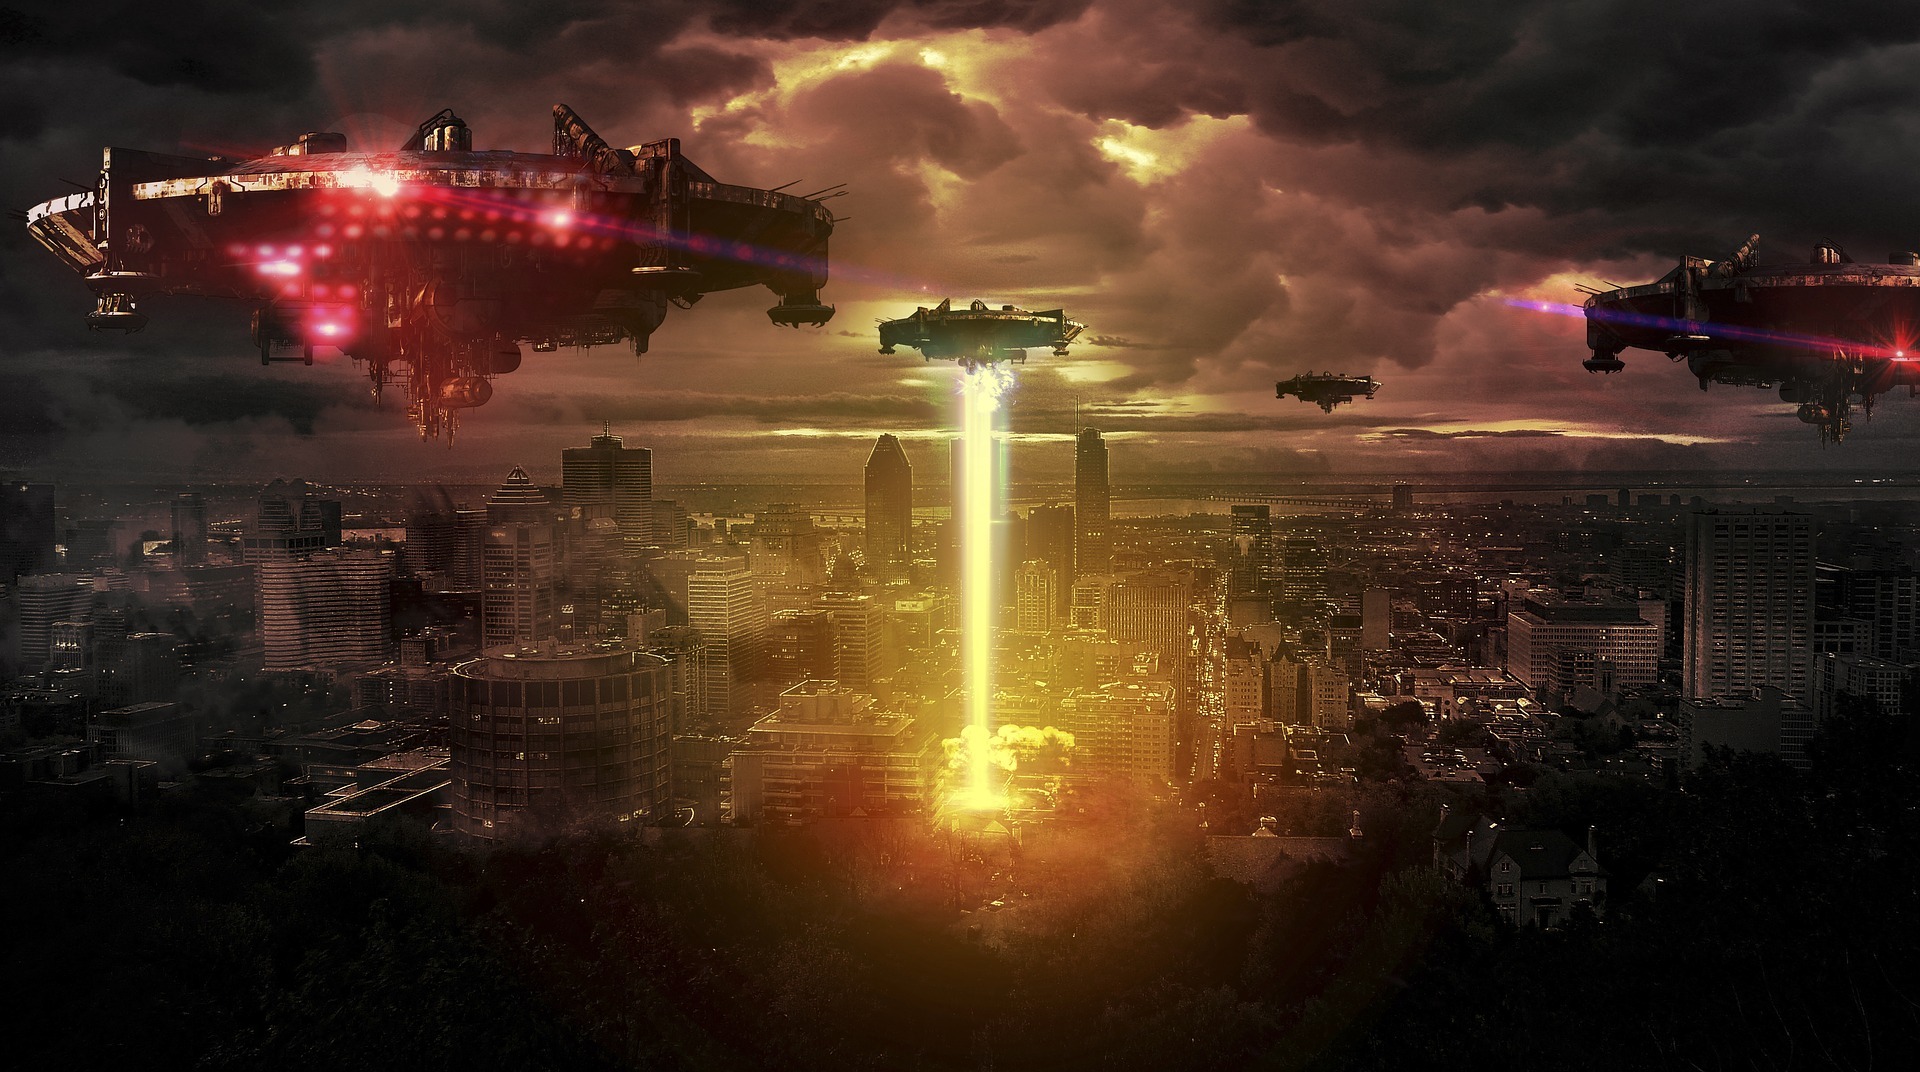 Varias naves extraterrestres atacando una ciudad. Leer la noticia de una invasión alienígena no es algo descabellado, si es 1 de abril.